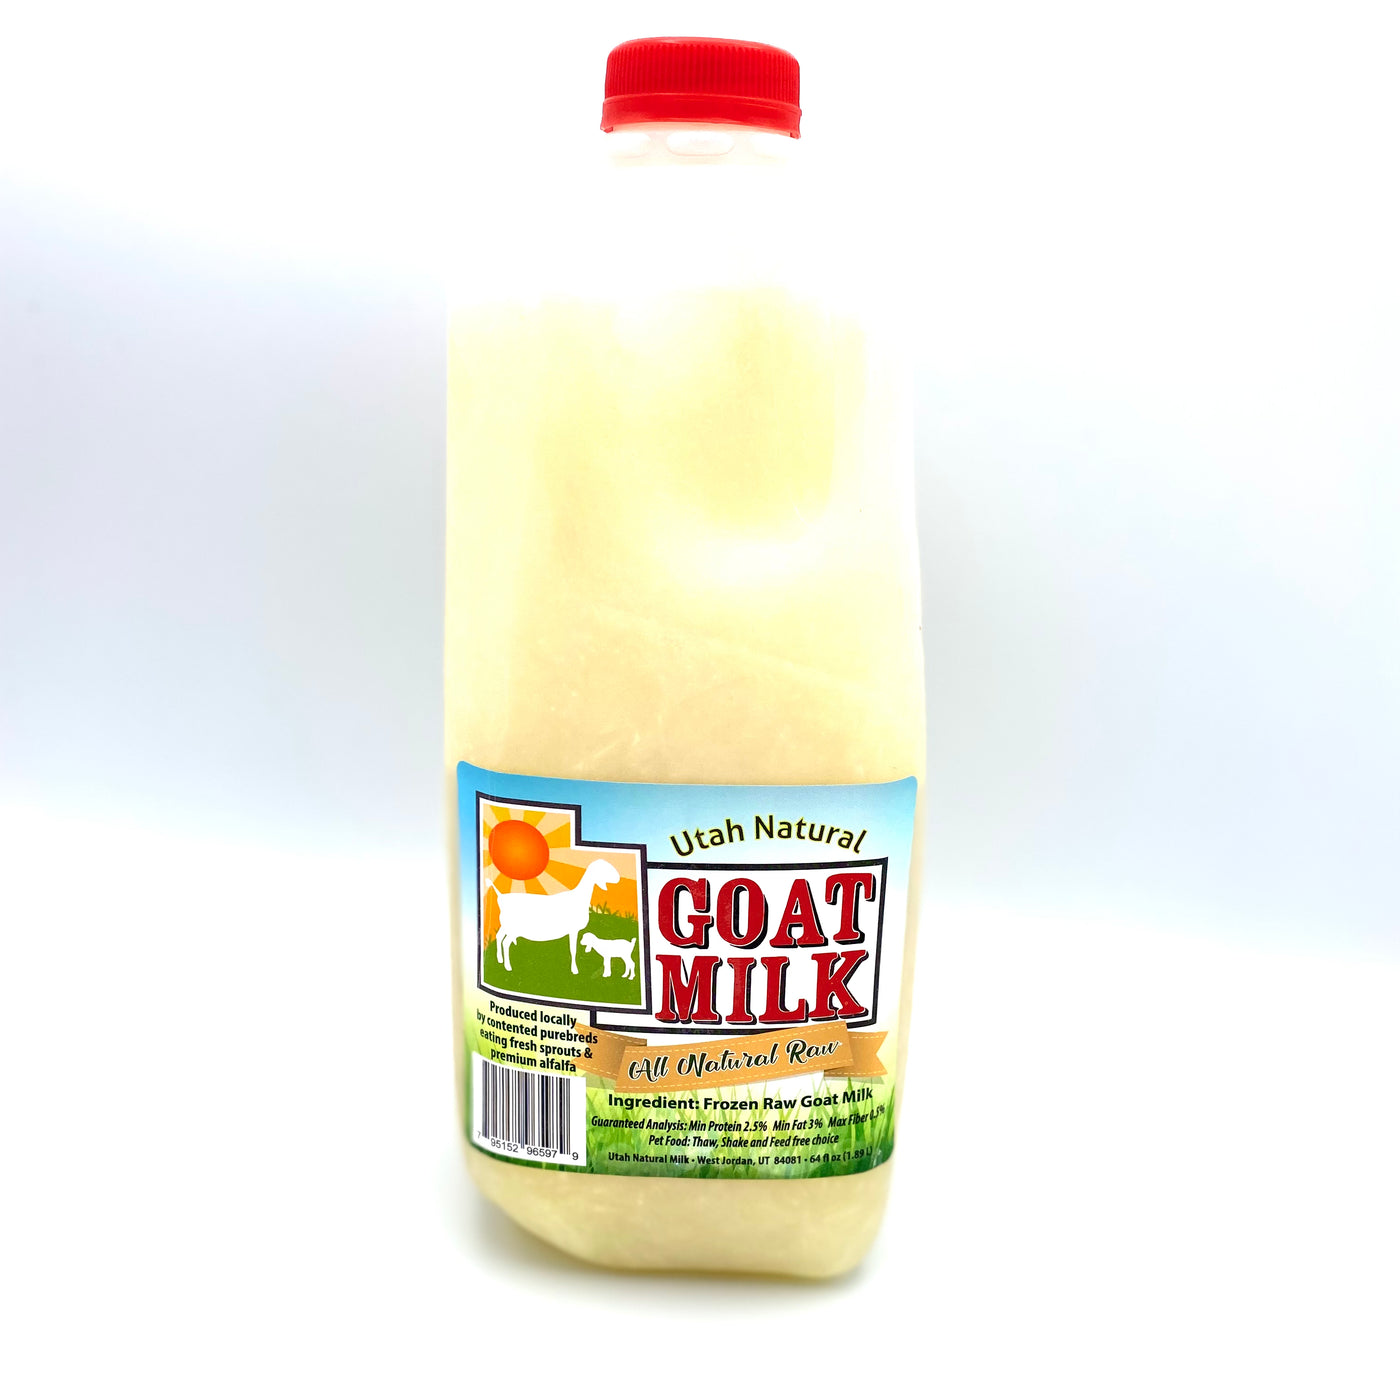 Utah Natural Goat Milk Half Gallon